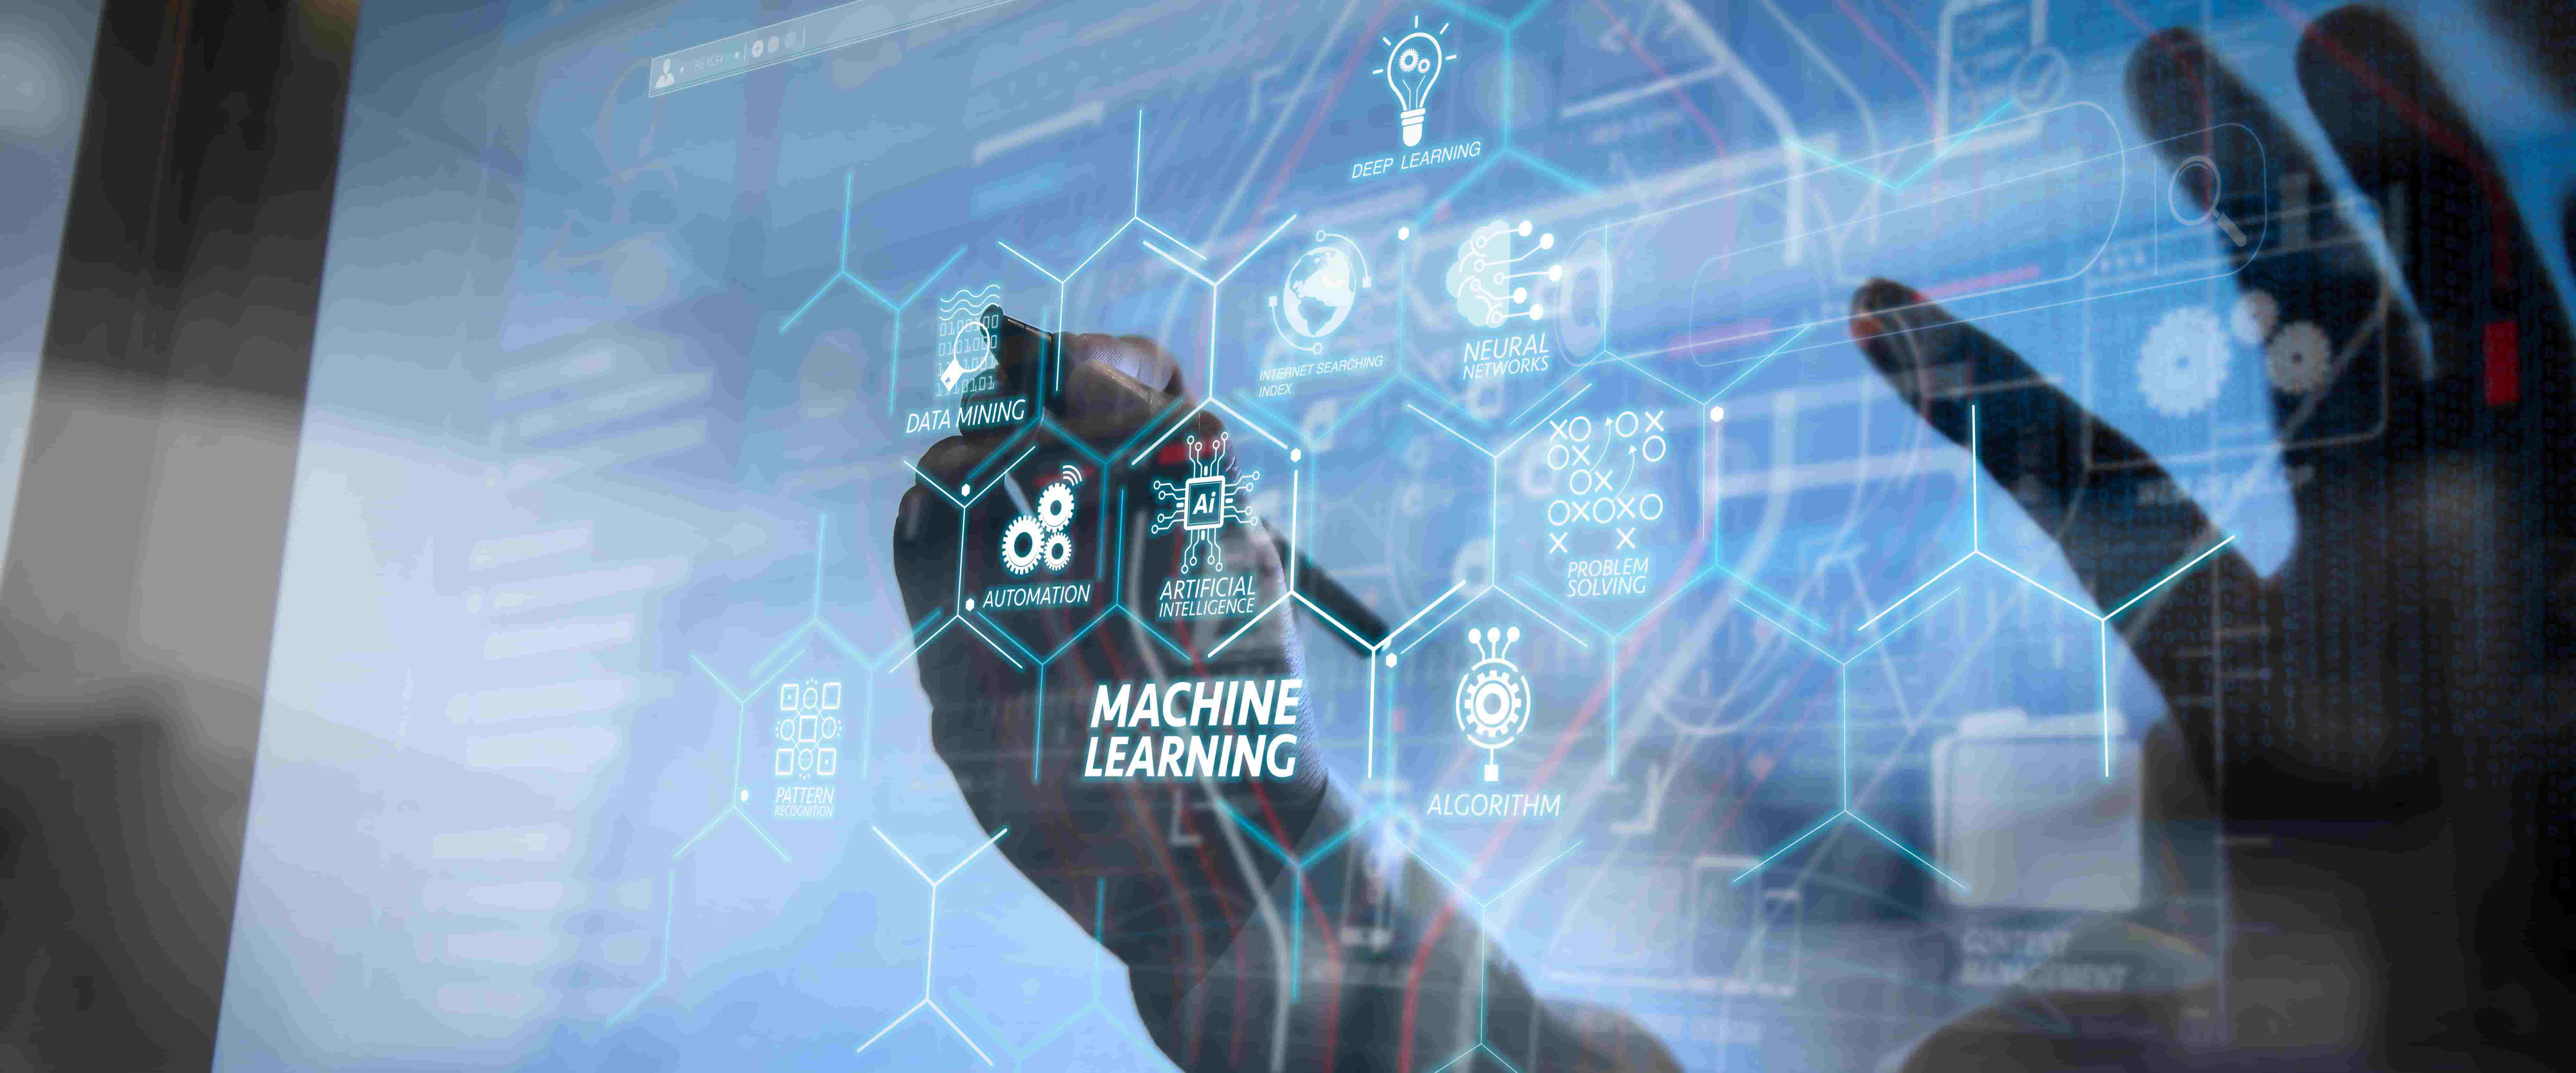 图片展示了一只手在触摸充满科技感的透明屏幕，屏幕上显示着“机器学习”字样及与人工智能相关的各种图标和术语。